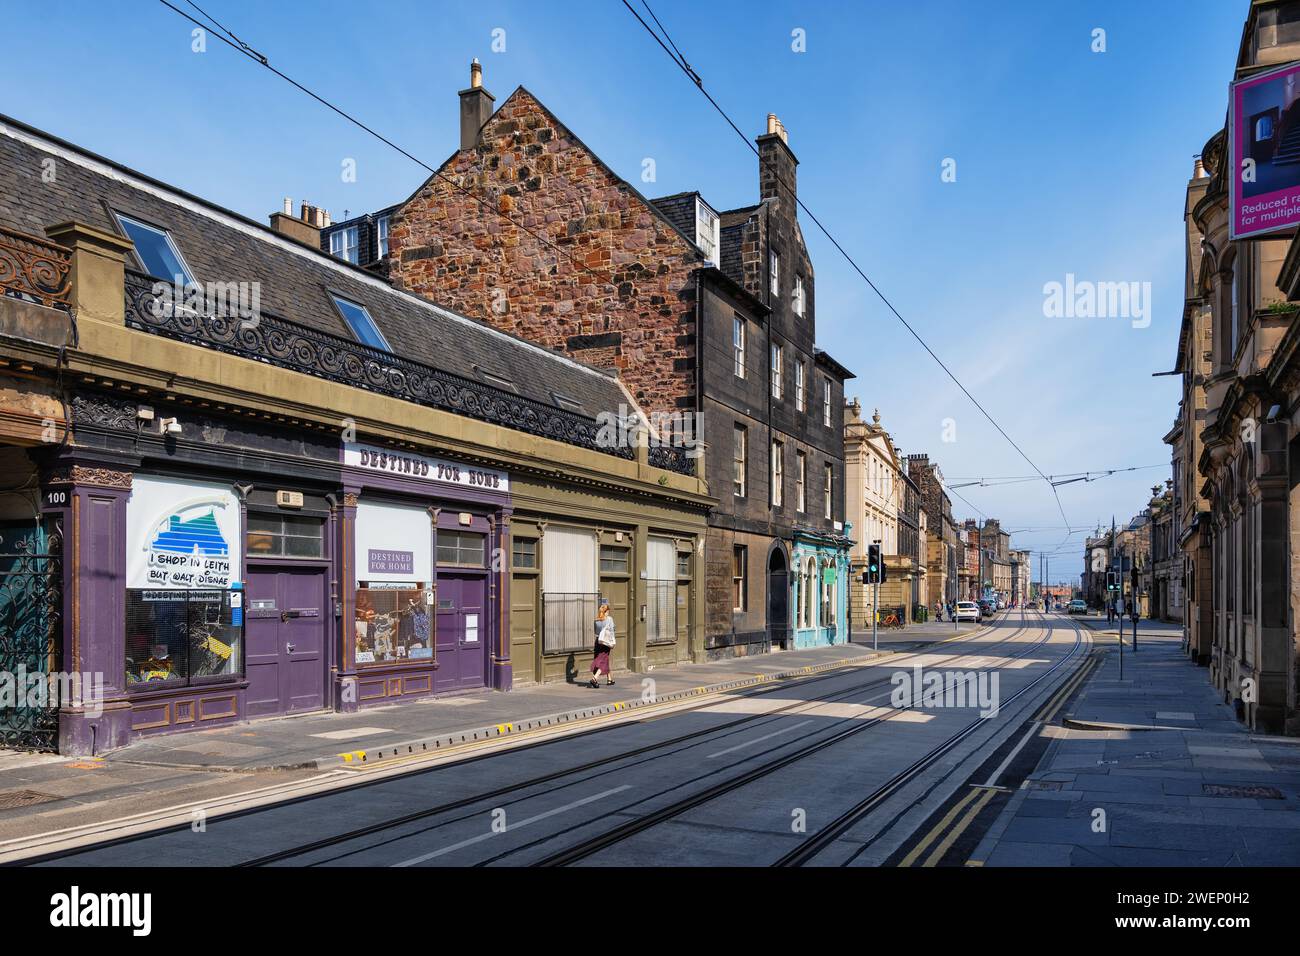 Constitution Street nel quartiere Leith, Edimburgo, Scozia, Regno Unito. Strada principale con tram, destinata al negozio di articoli da regalo Home sulla sinistra. Foto Stock